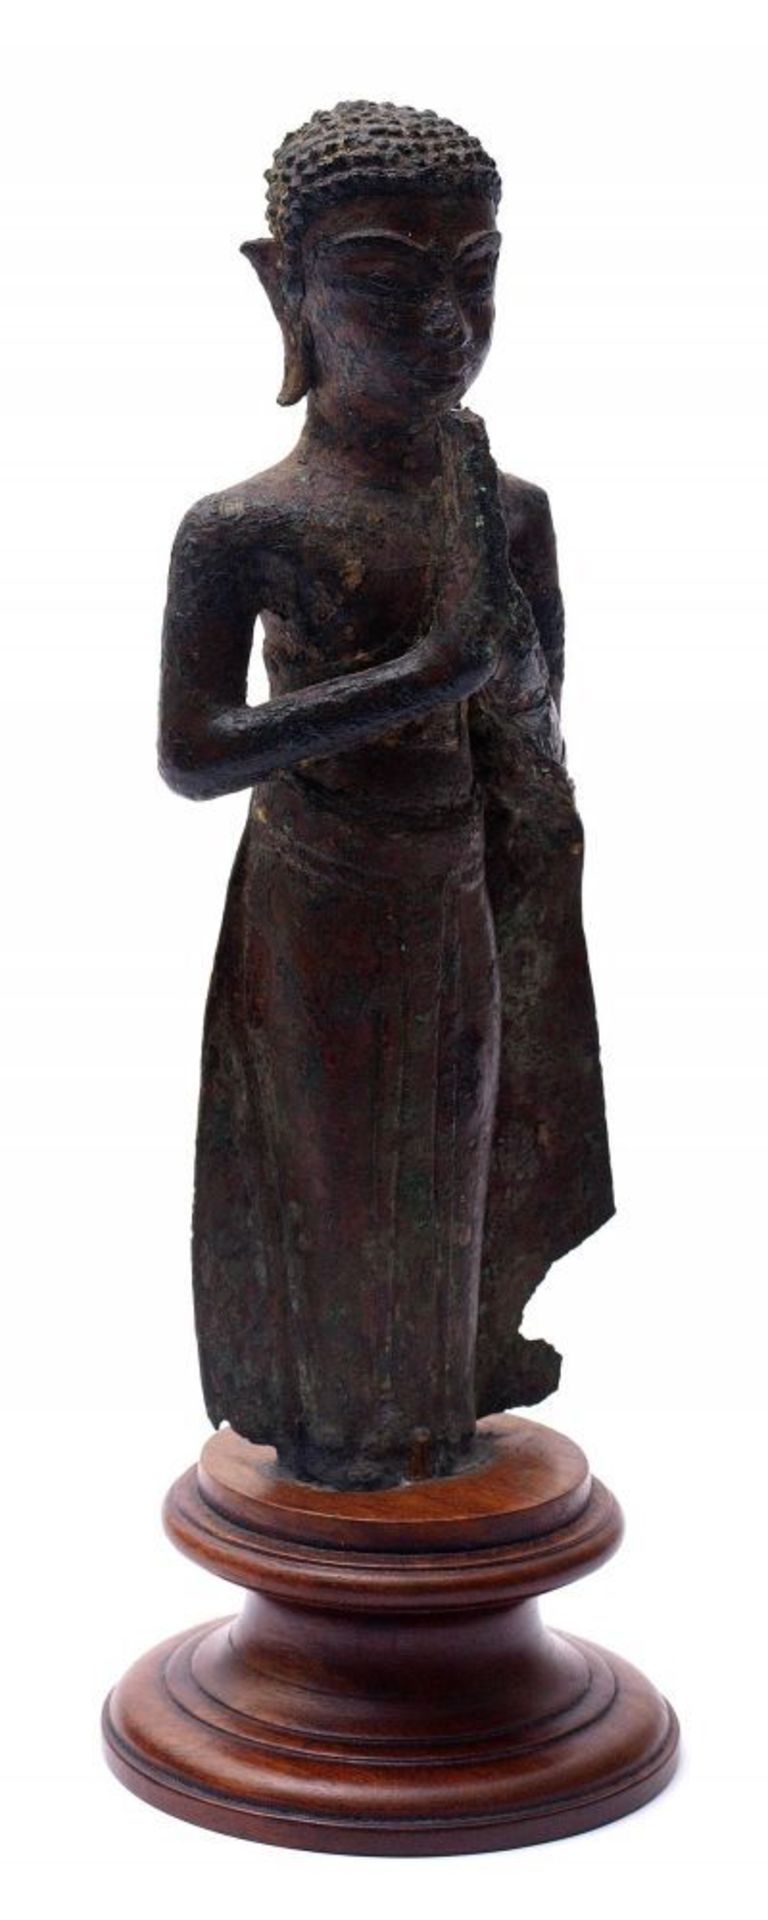 Buddhafigur, Burma, wohl 18./19.Jhdt. Stehend, die Hände zum Gebet gefaltet. Bodenfund. Bronze mit - Bild 3 aus 4